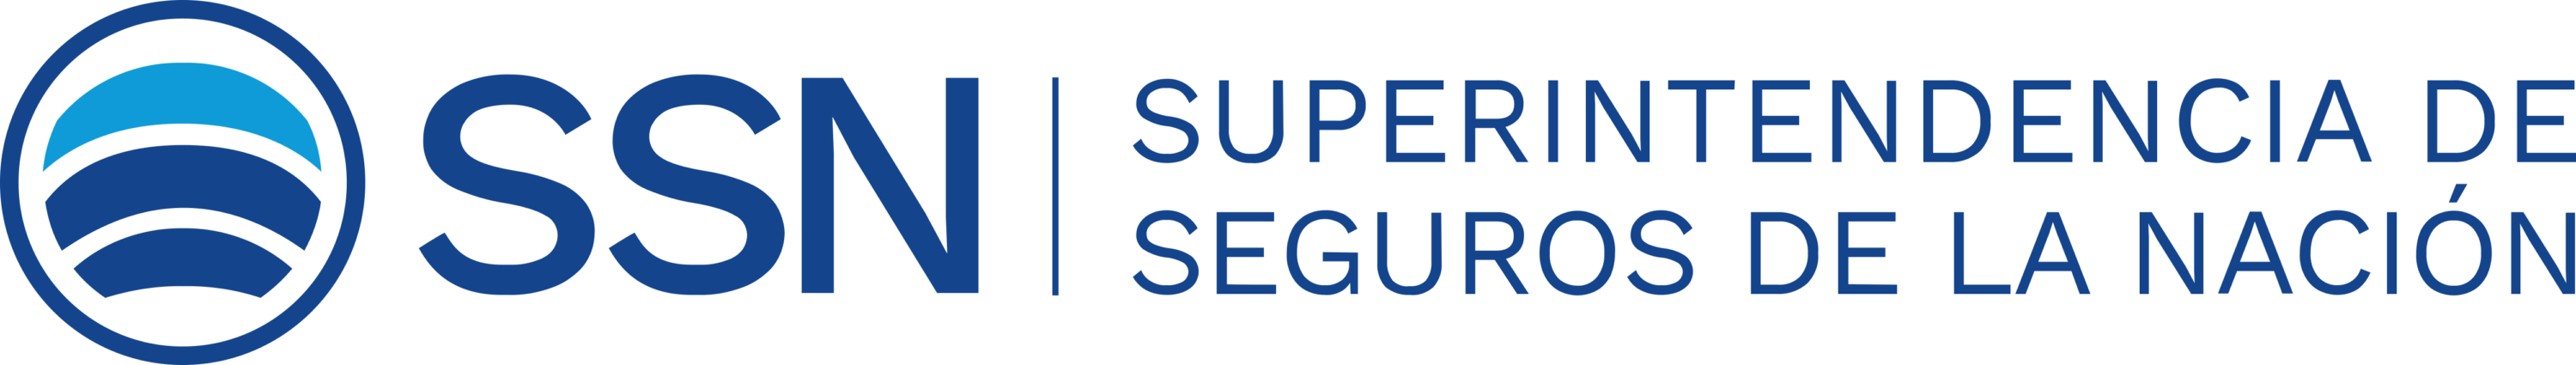 Superintendencia de Segures de La Nacion Logo